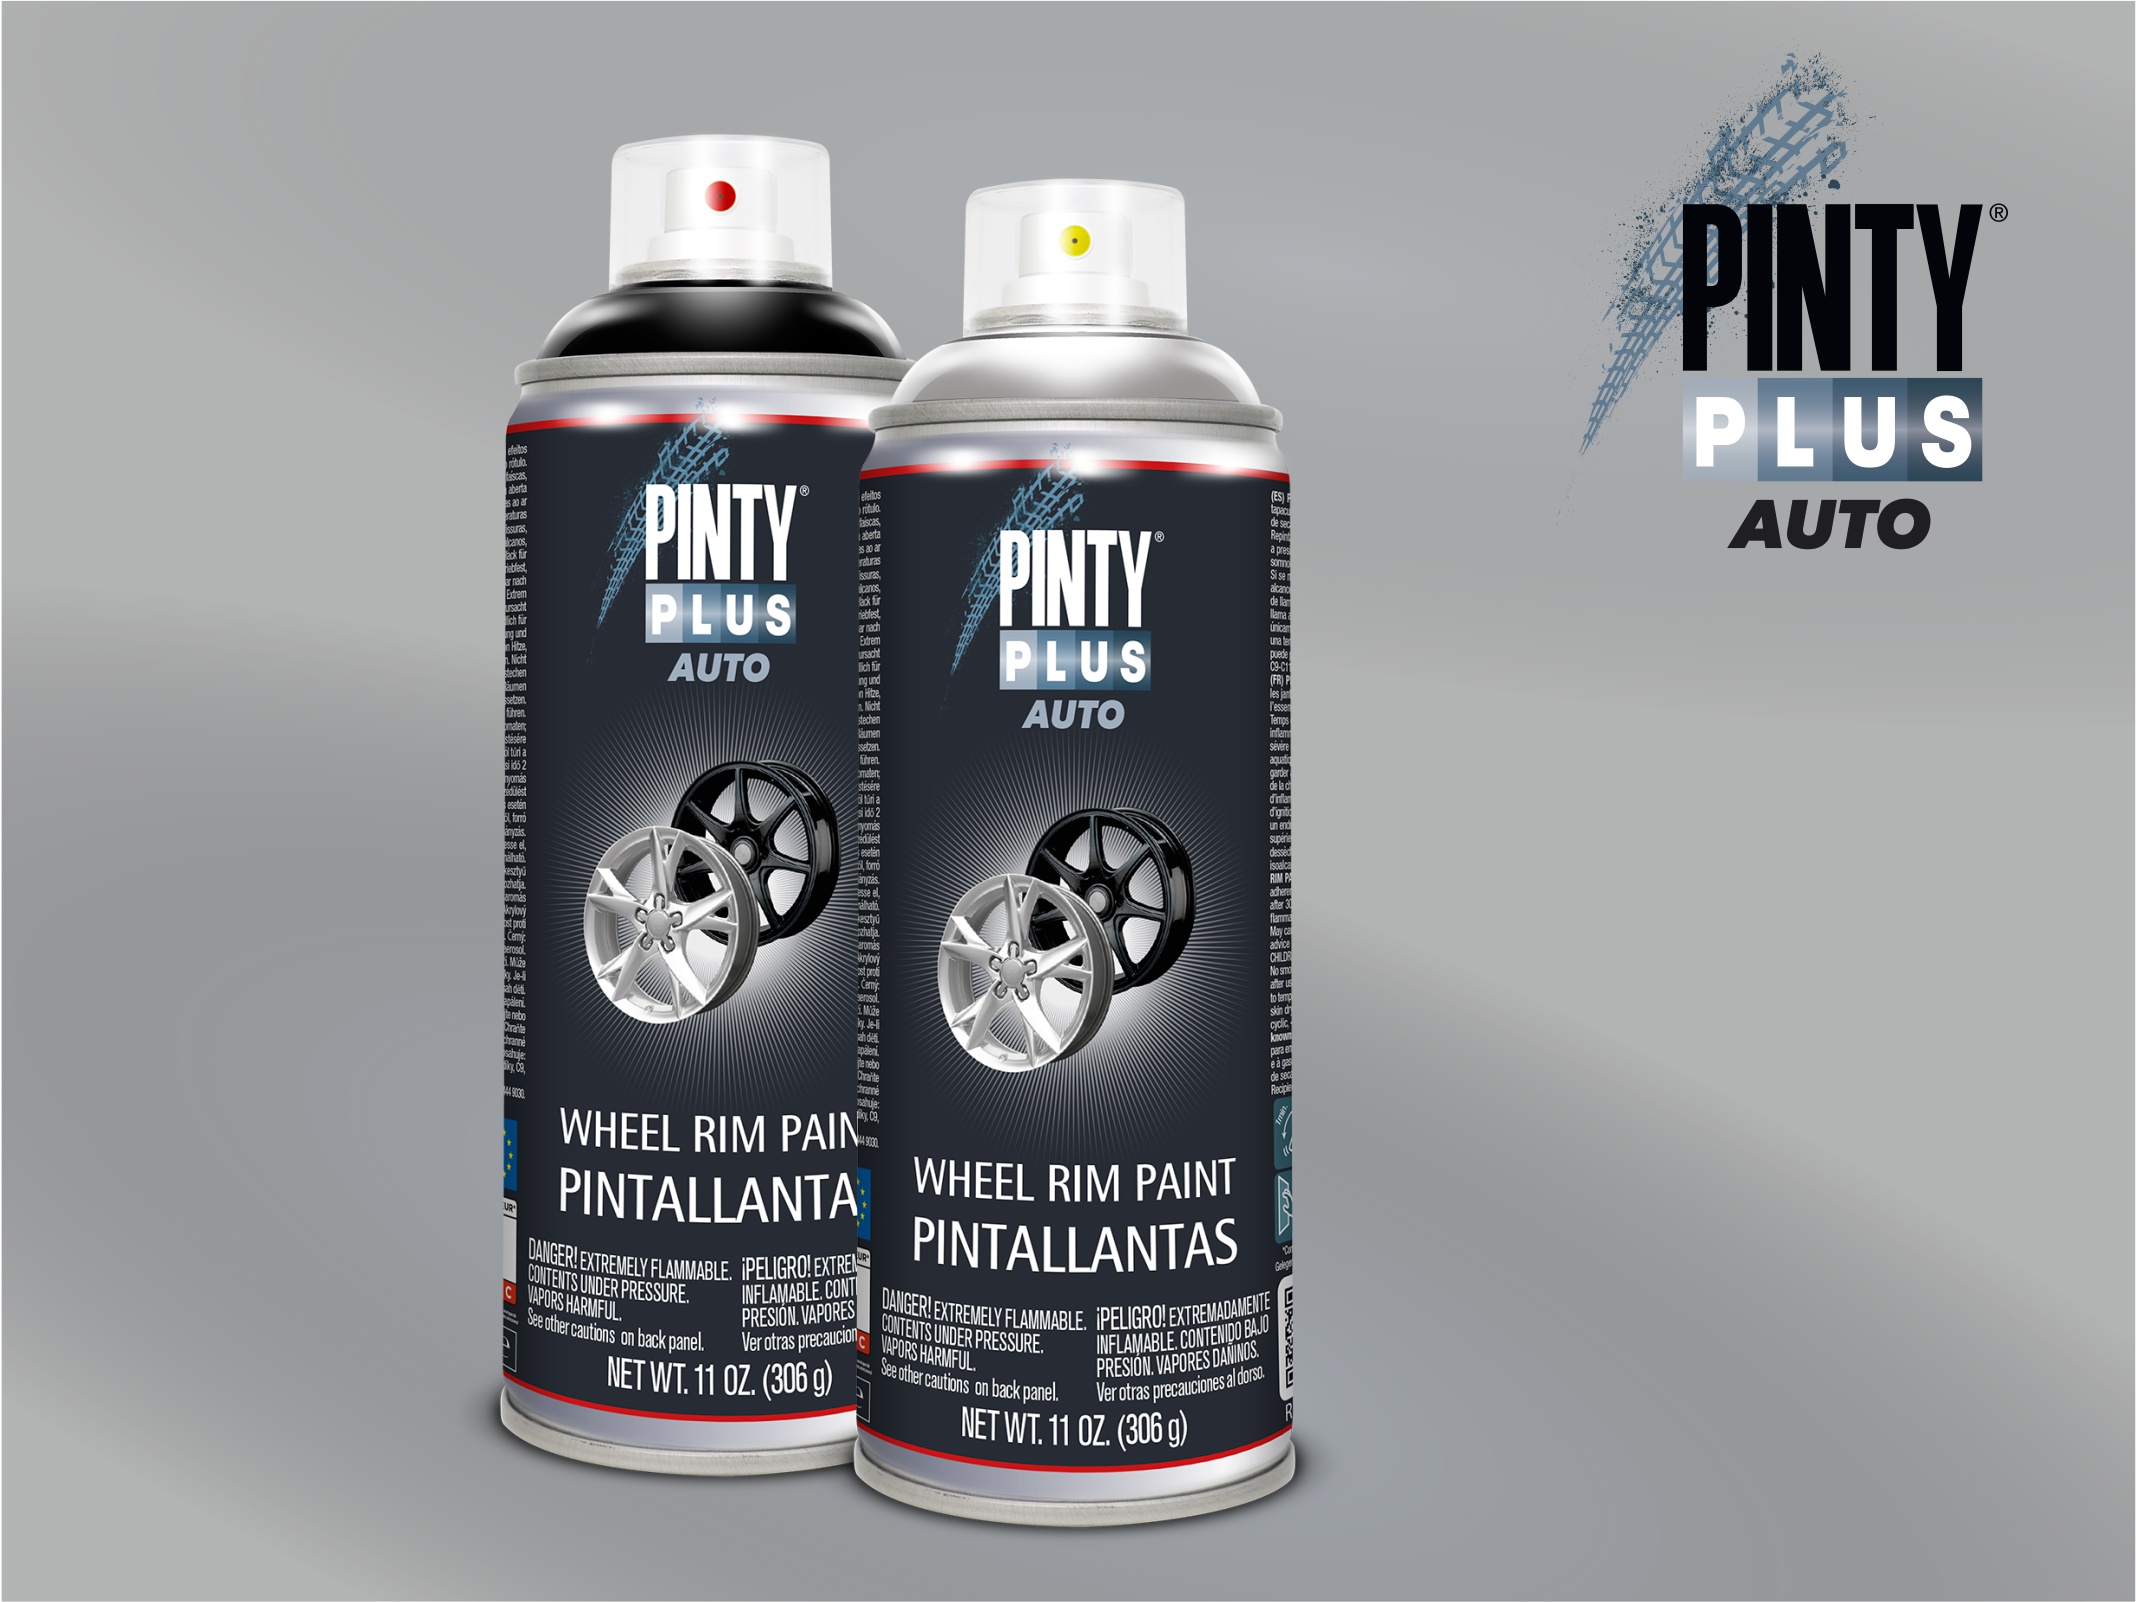 PintyPlus AUTO Wheel rim Paint farba do malowania felg stalowych i aluminiowych